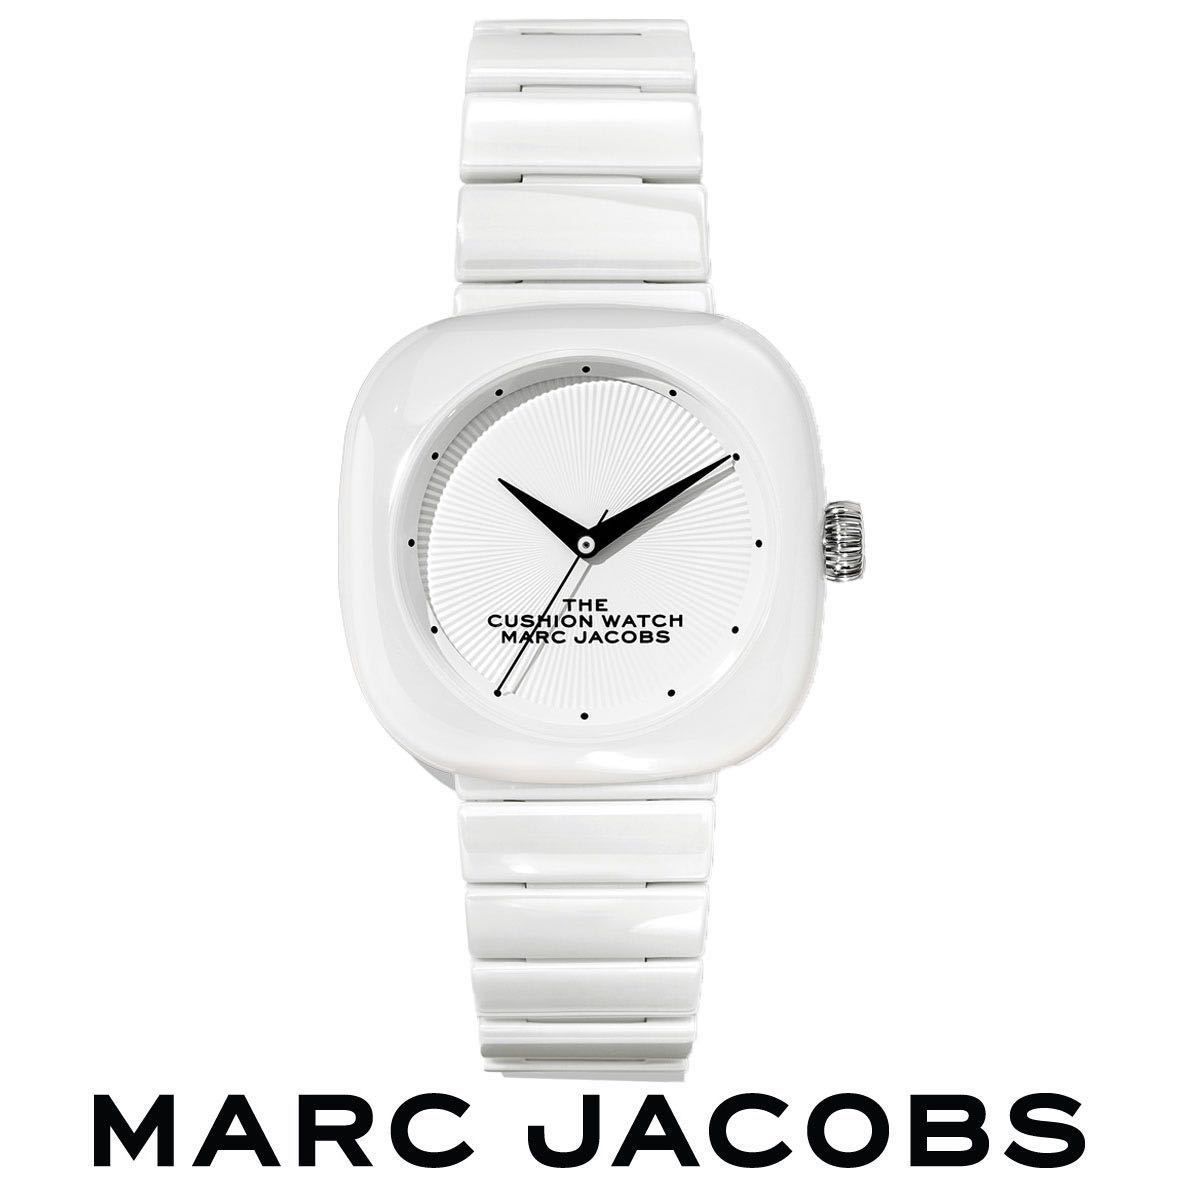 マークジェイコブス 時計 腕時計 レディース クッションウォッチ MARC JACOBS スクエア ウォッチ ホワイト 白 セラミック 白 四角  20184710 The Cushion Watch 36mm M8000737-100-1SZ 女性